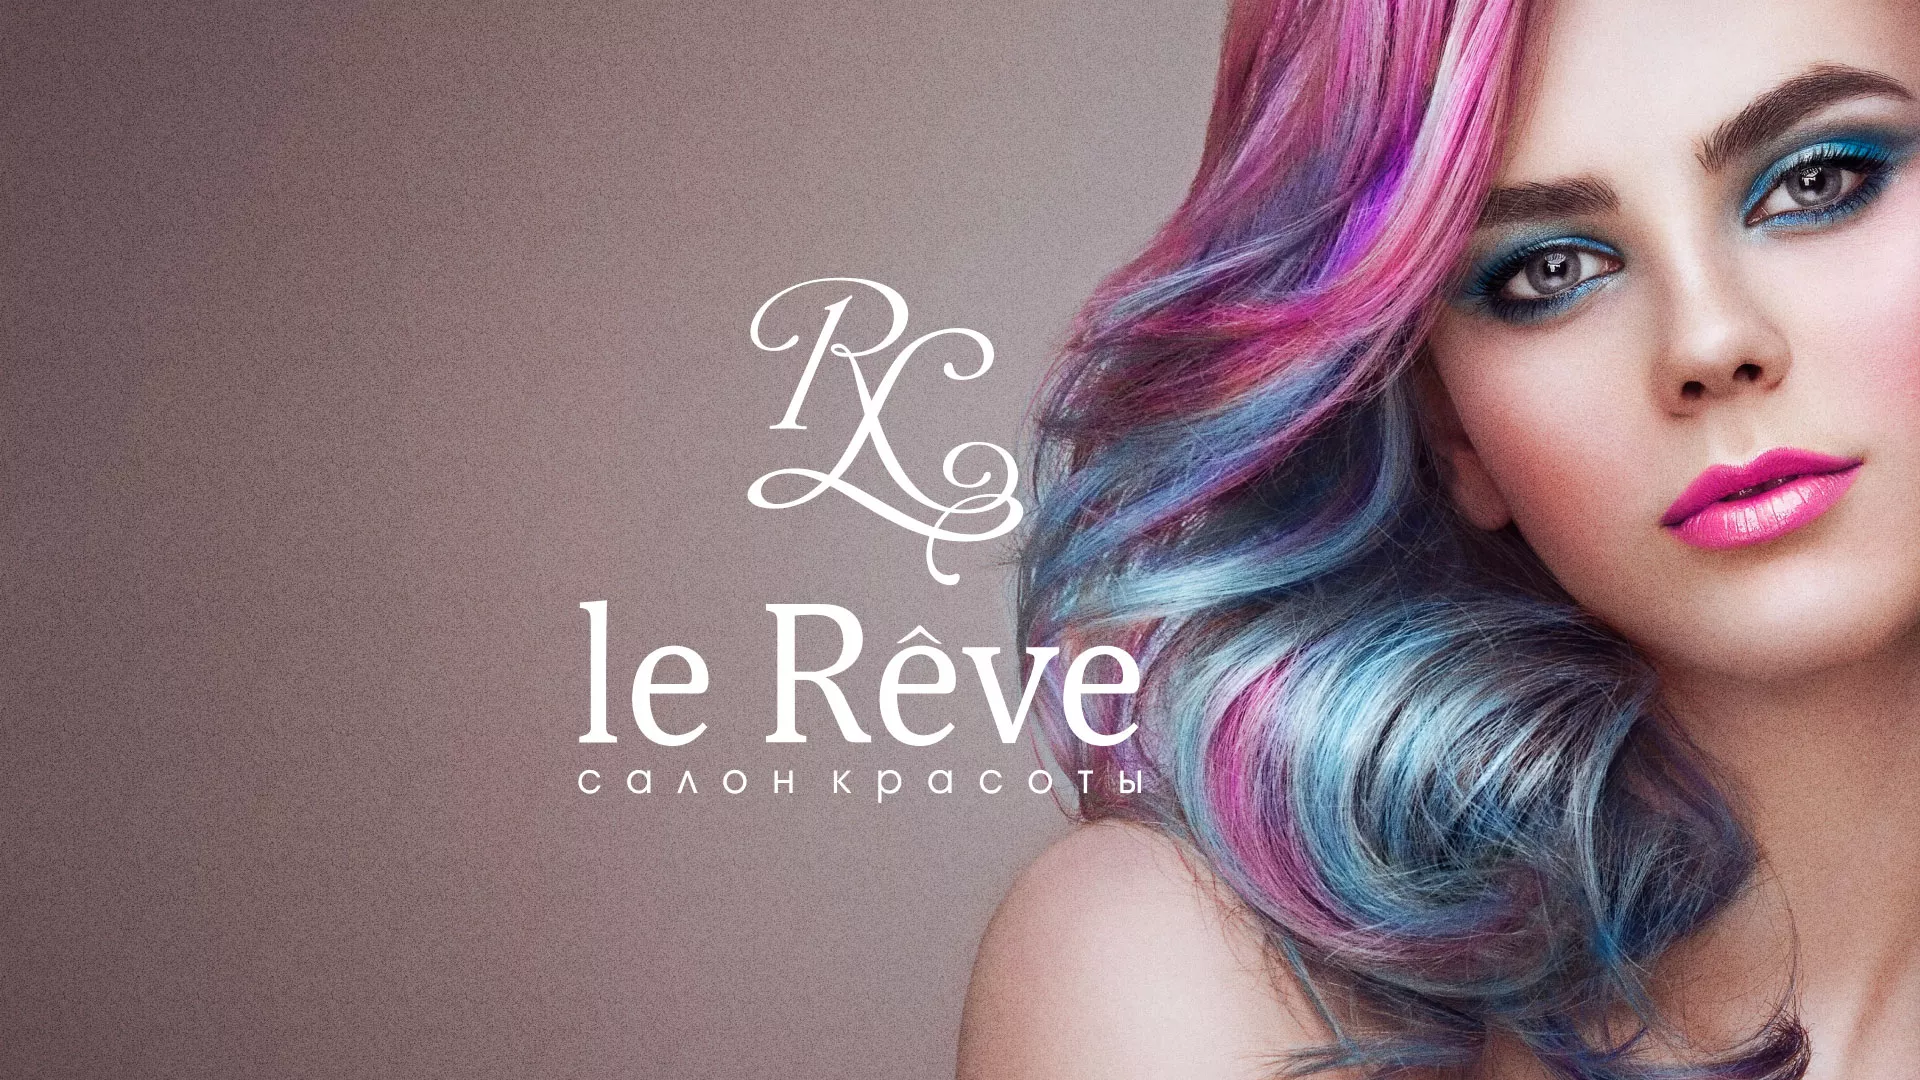 Создание сайта для салона красоты «Le Reve» в Морозовске